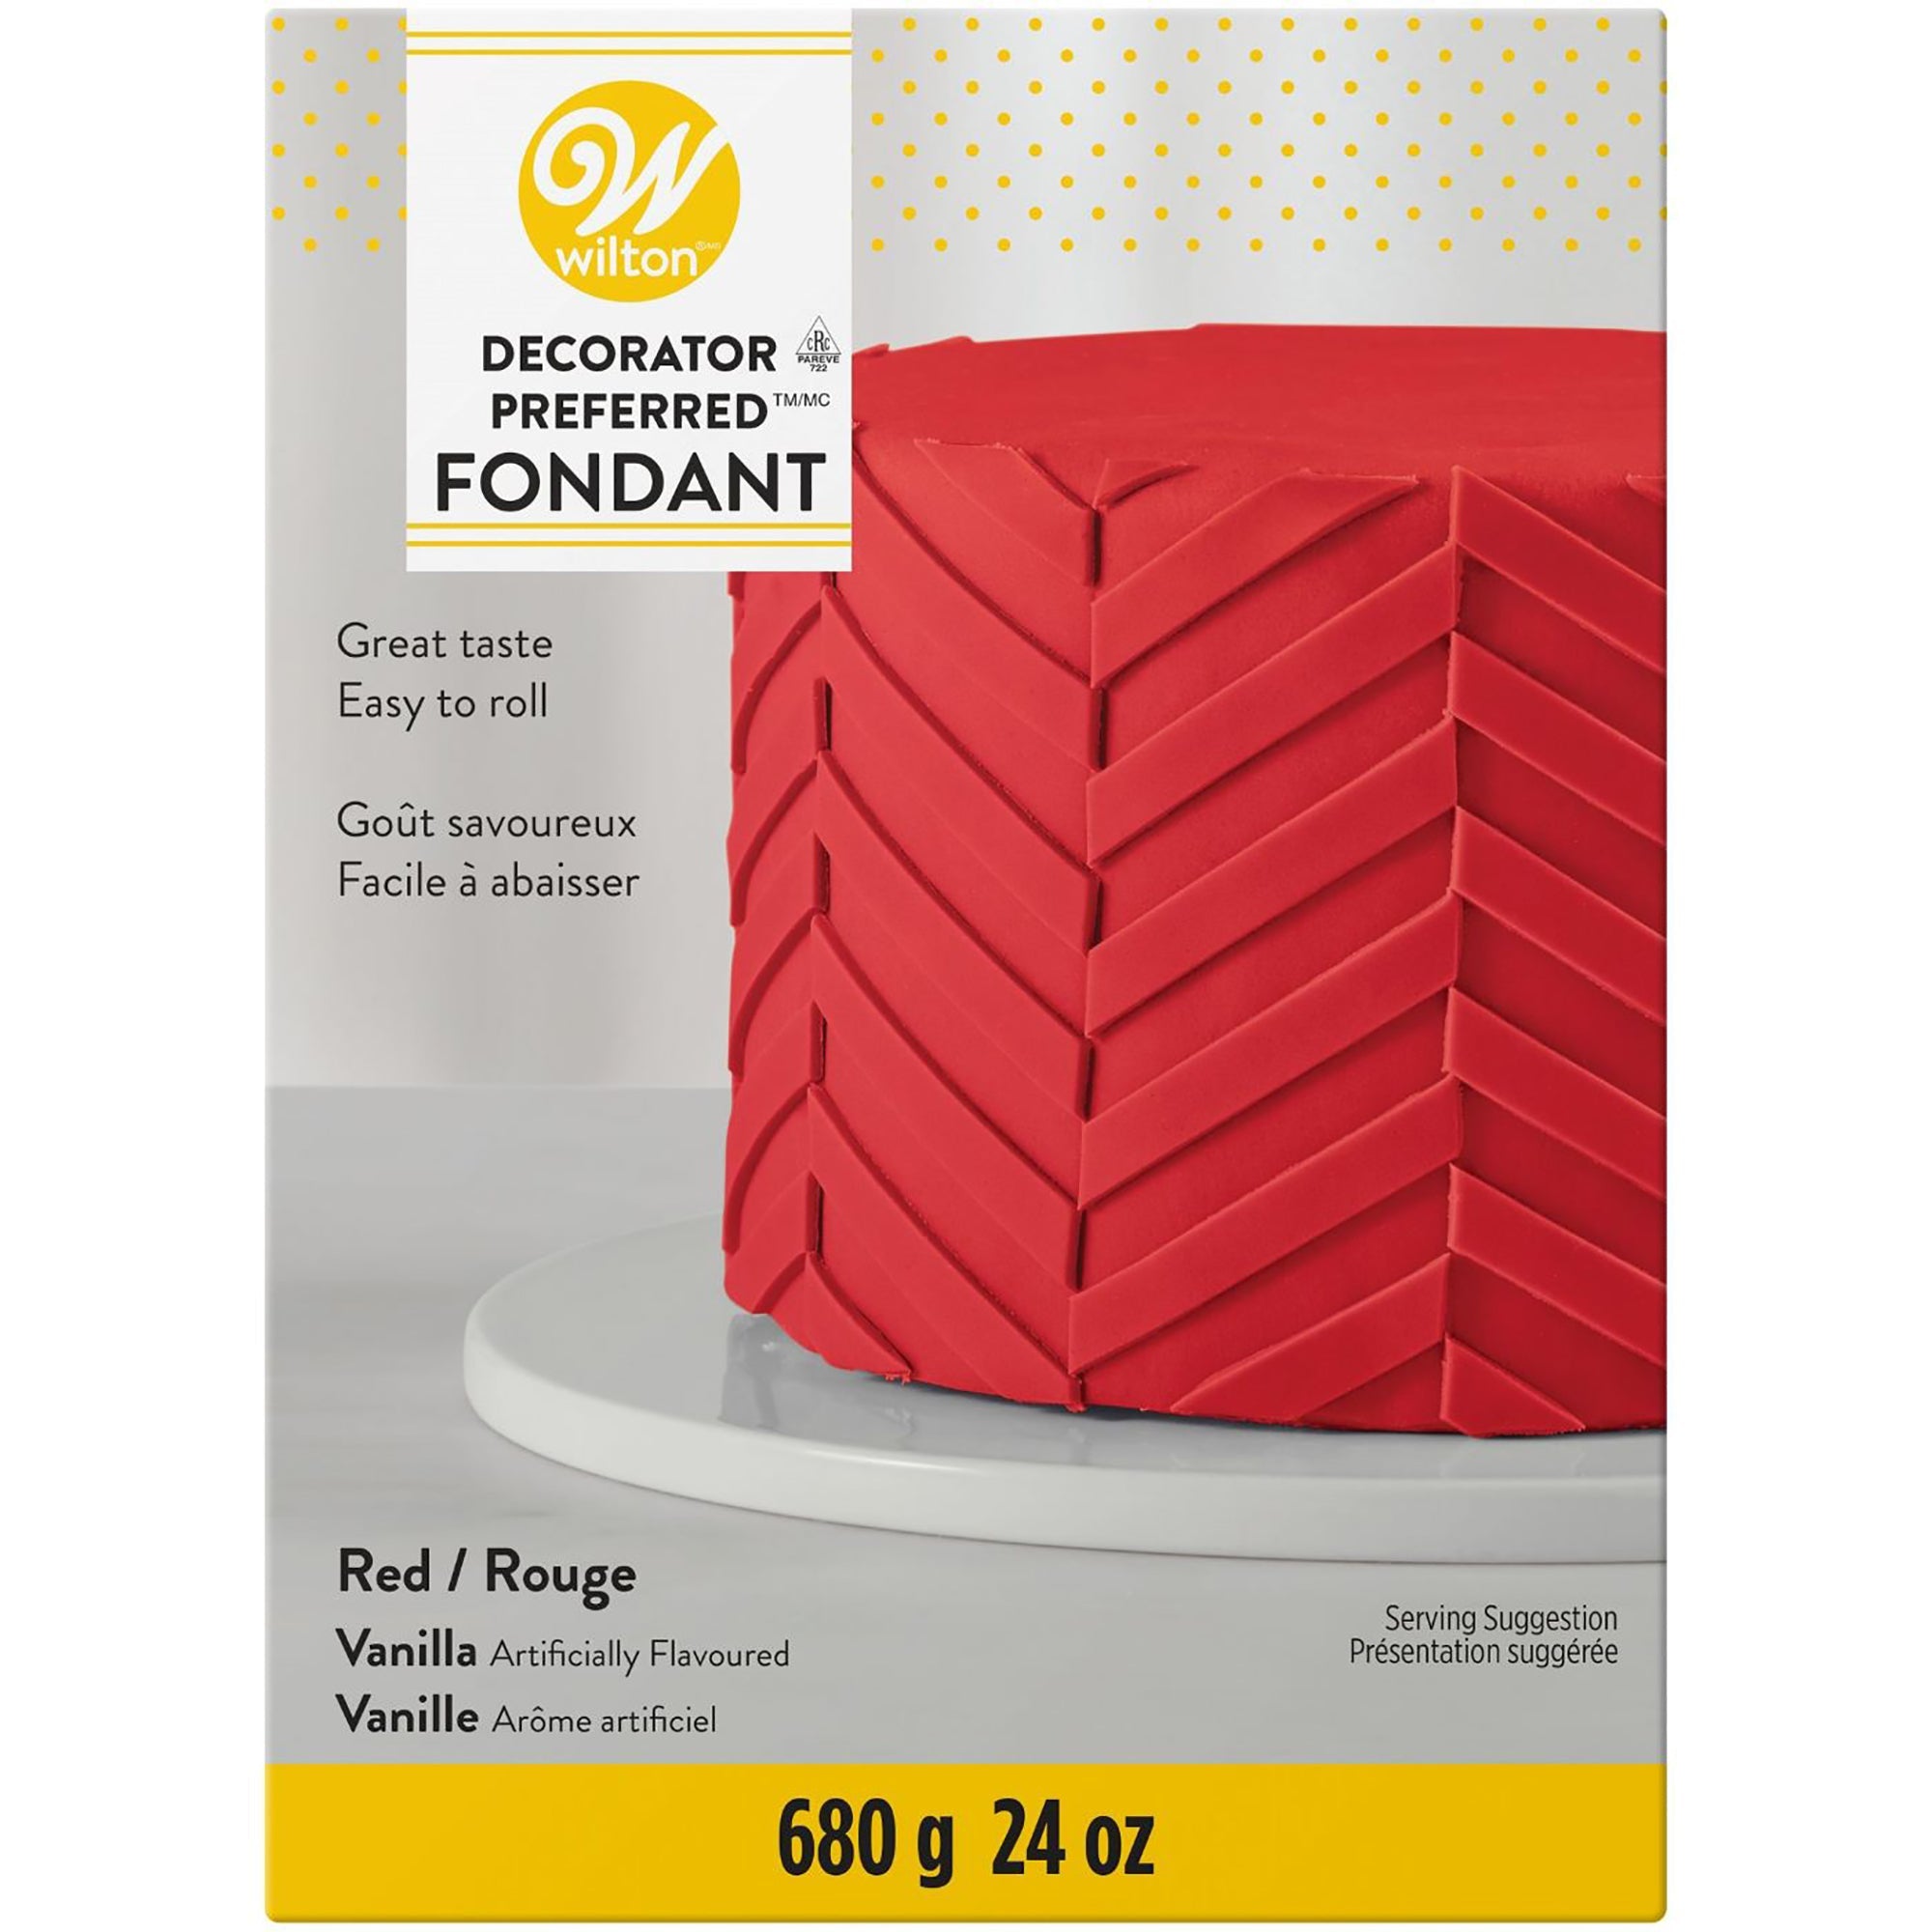 Wilton Fondant Red - Vanilla Artificially Flavored 24oz (680g)